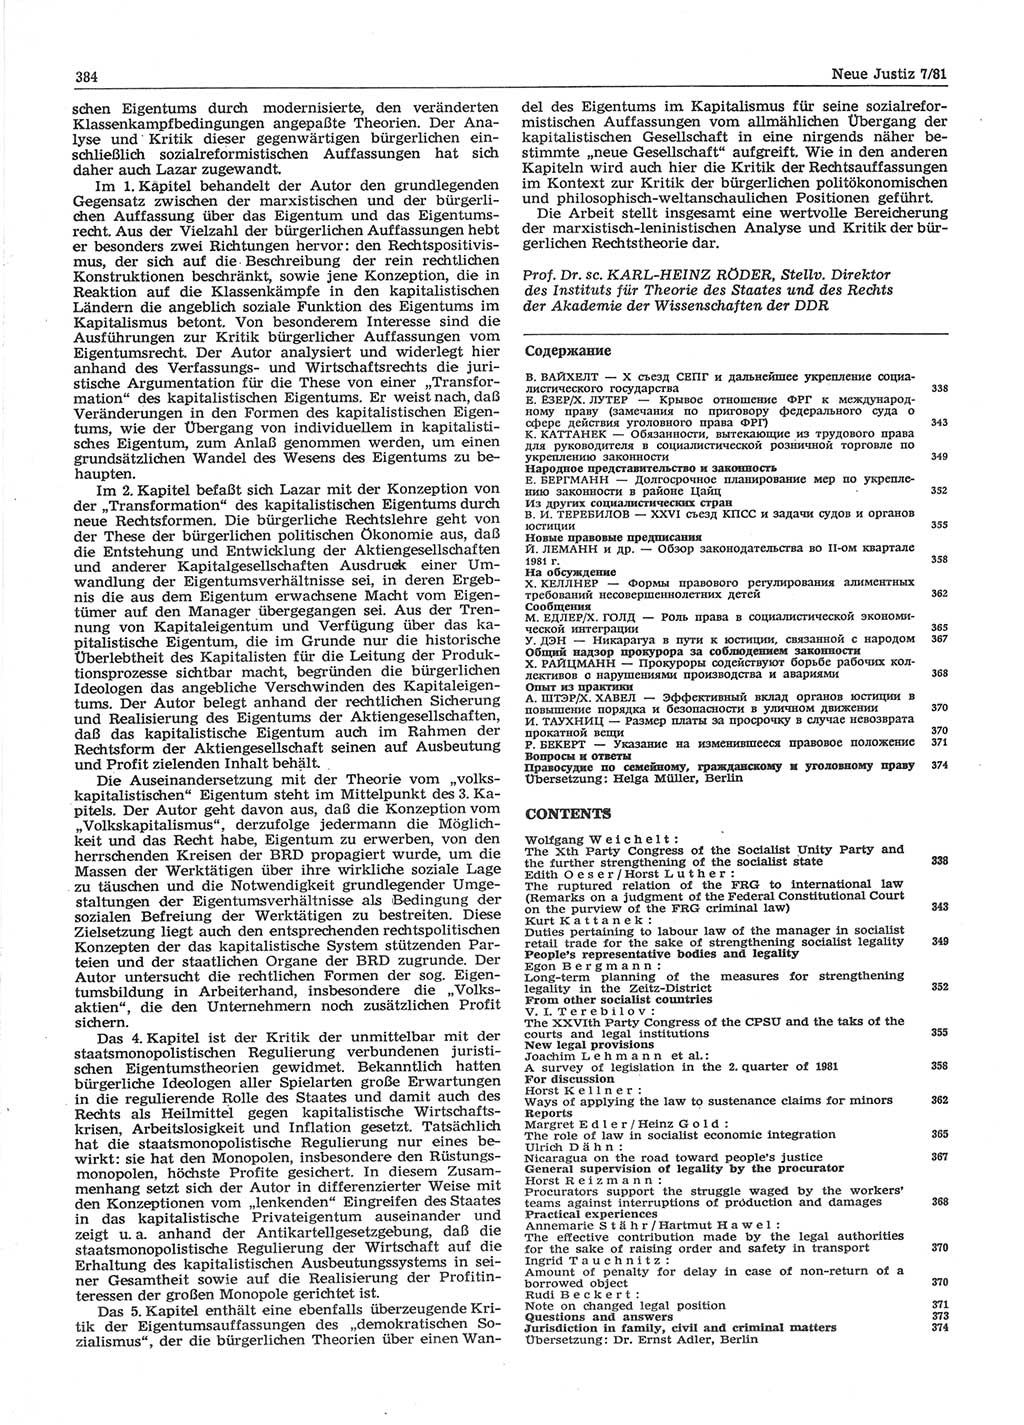 Neue Justiz (NJ), Zeitschrift für sozialistisches Recht und Gesetzlichkeit [Deutsche Demokratische Republik (DDR)], 35. Jahrgang 1981, Seite 384 (NJ DDR 1981, S. 384)